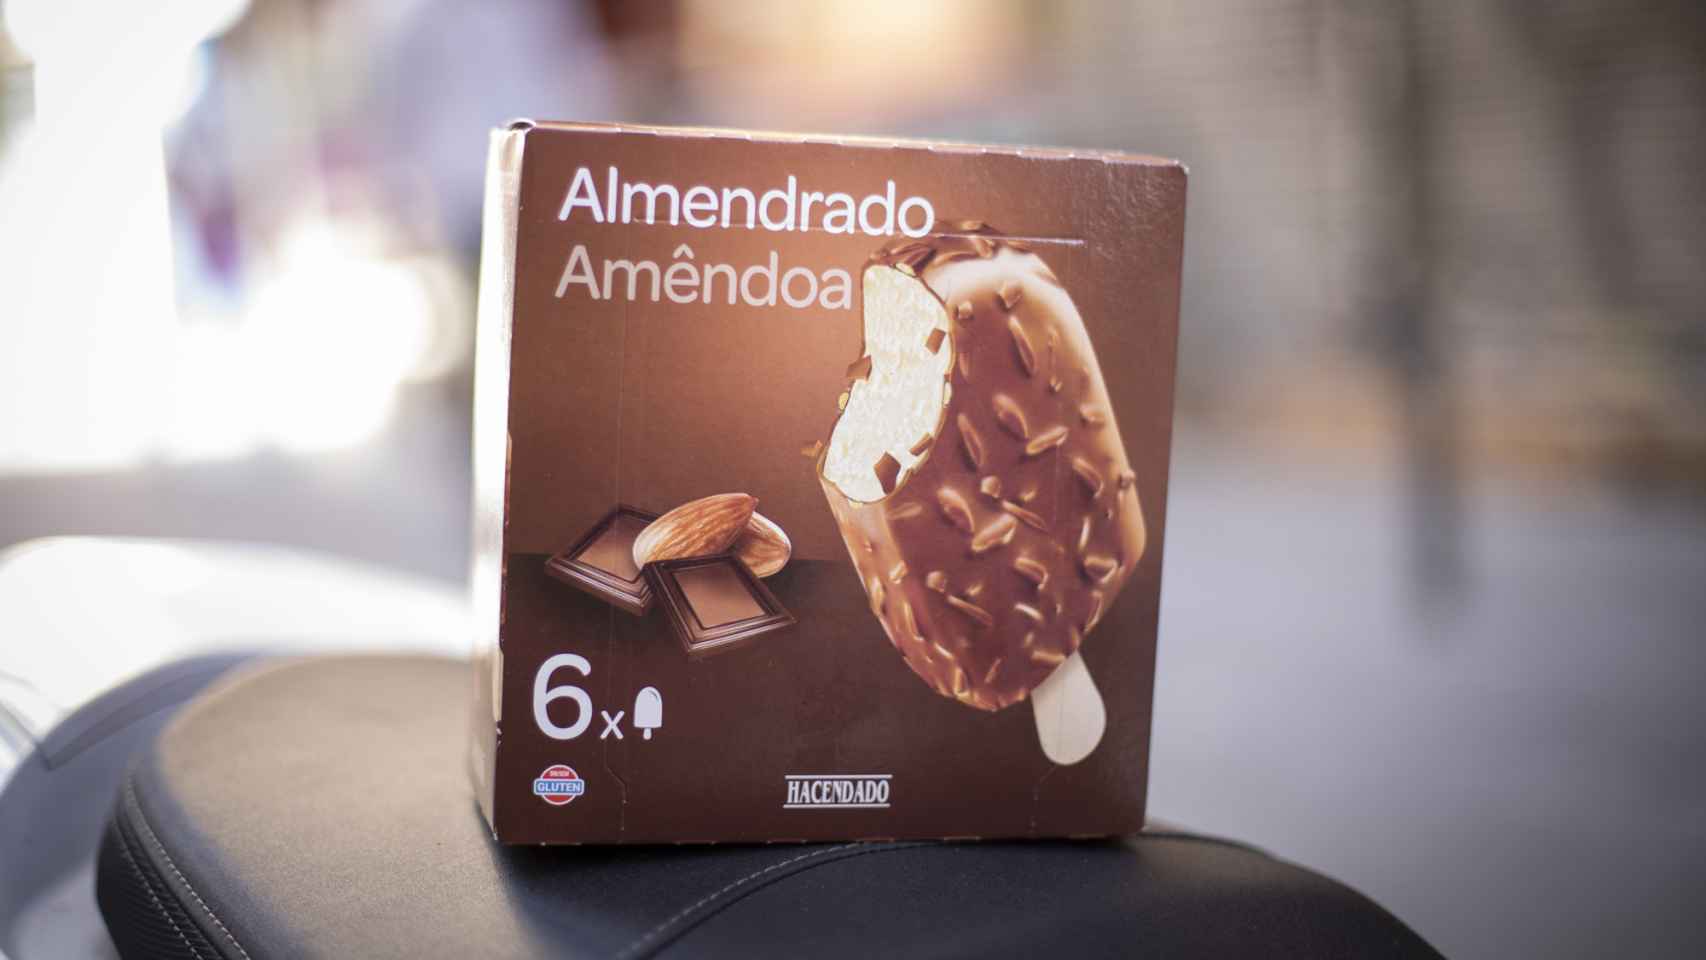 La caja de helados almendrados de Hacendado, la marca blanca de Mercadona.